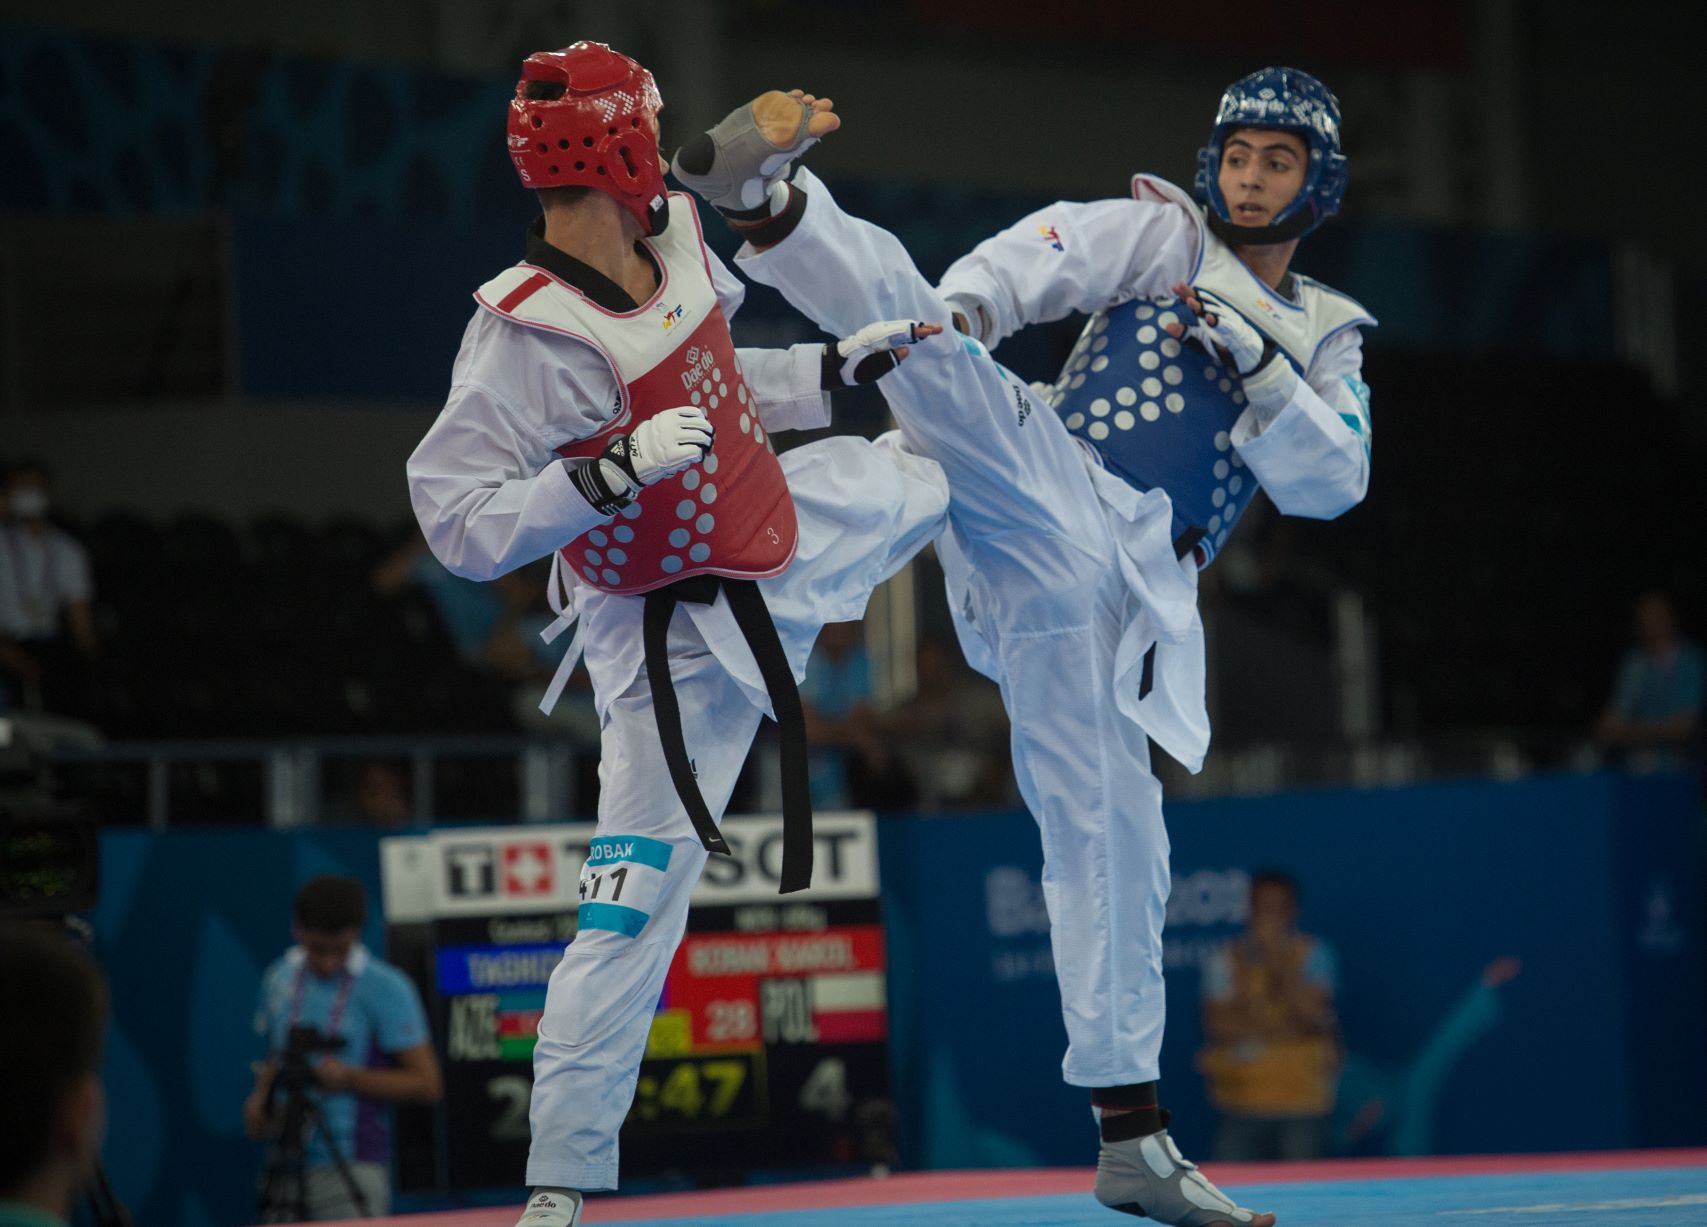 Igrzyska Europejskie w Krynicy. „To najważniejsza impreza w historii polskiego taekwondo”